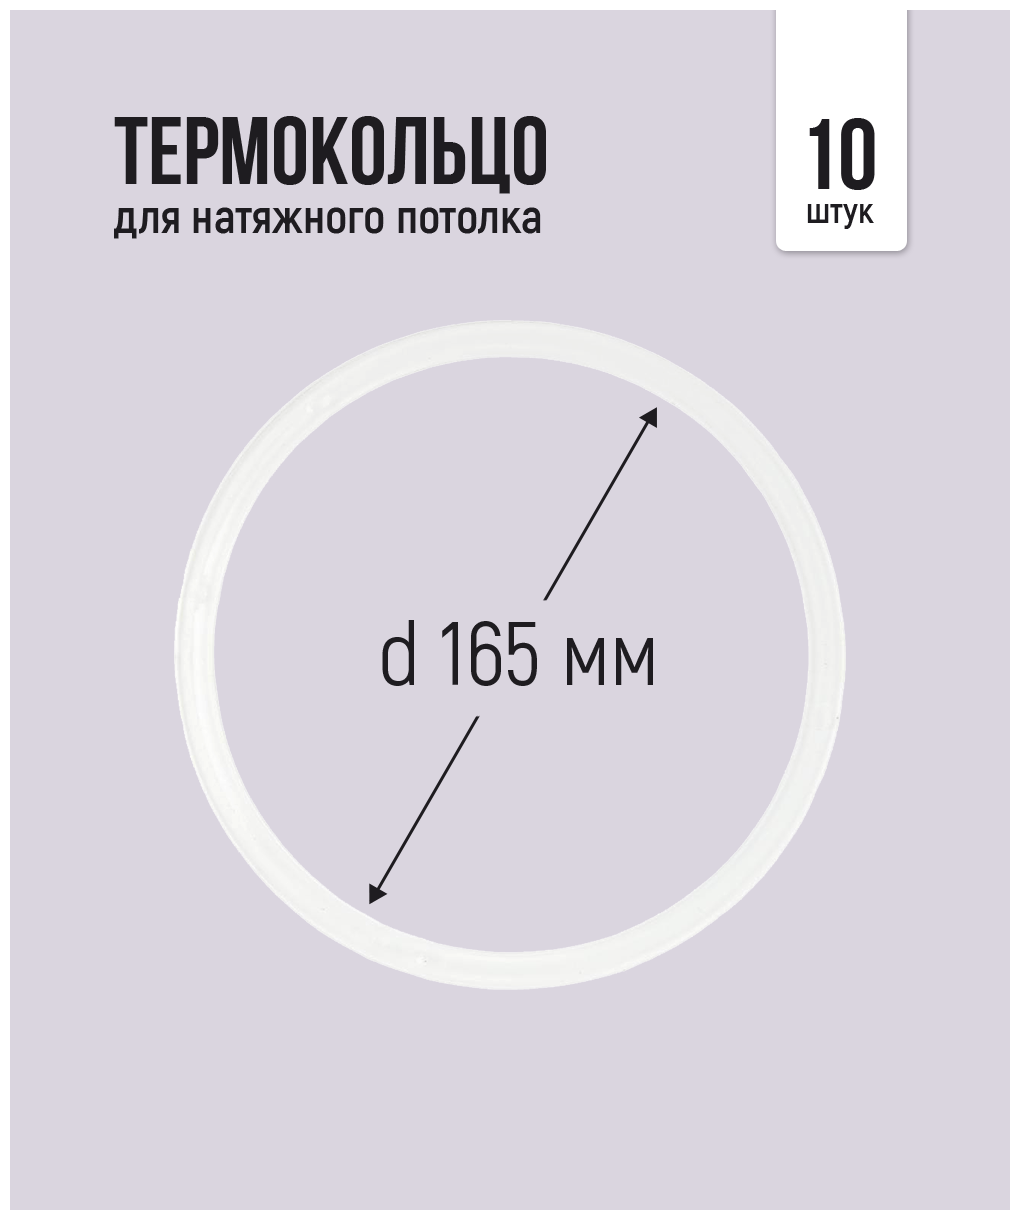 Термокольцо для натяжного потолка d 165 мм, 10 шт